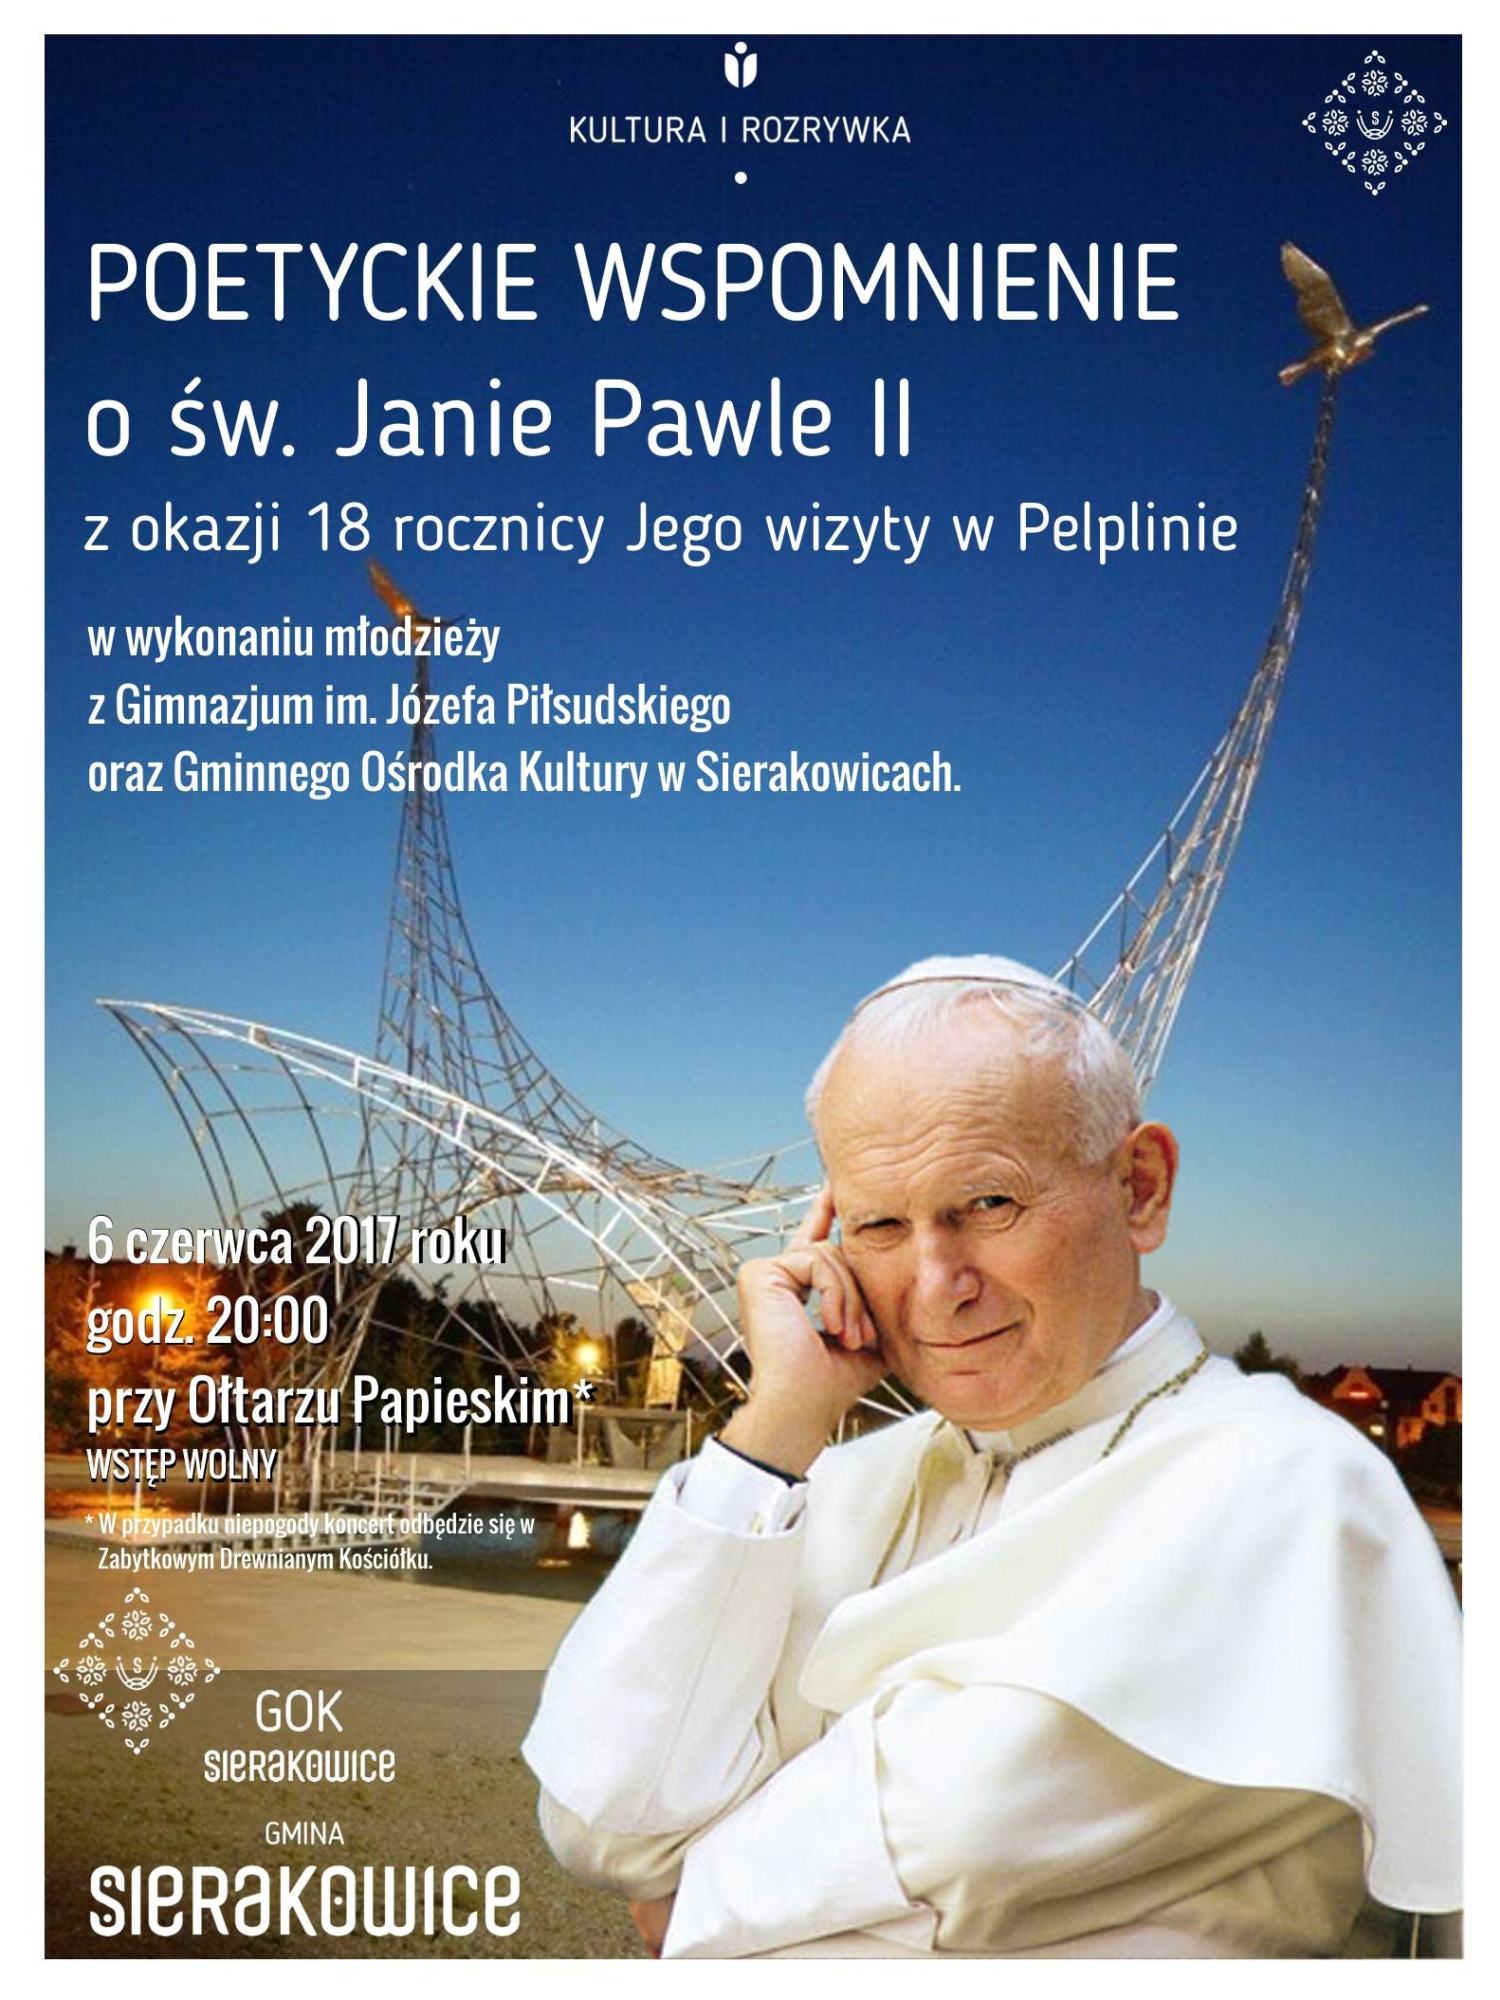 Poetyckie wspomnienie św. Jana Pawła II w Sierakowicach